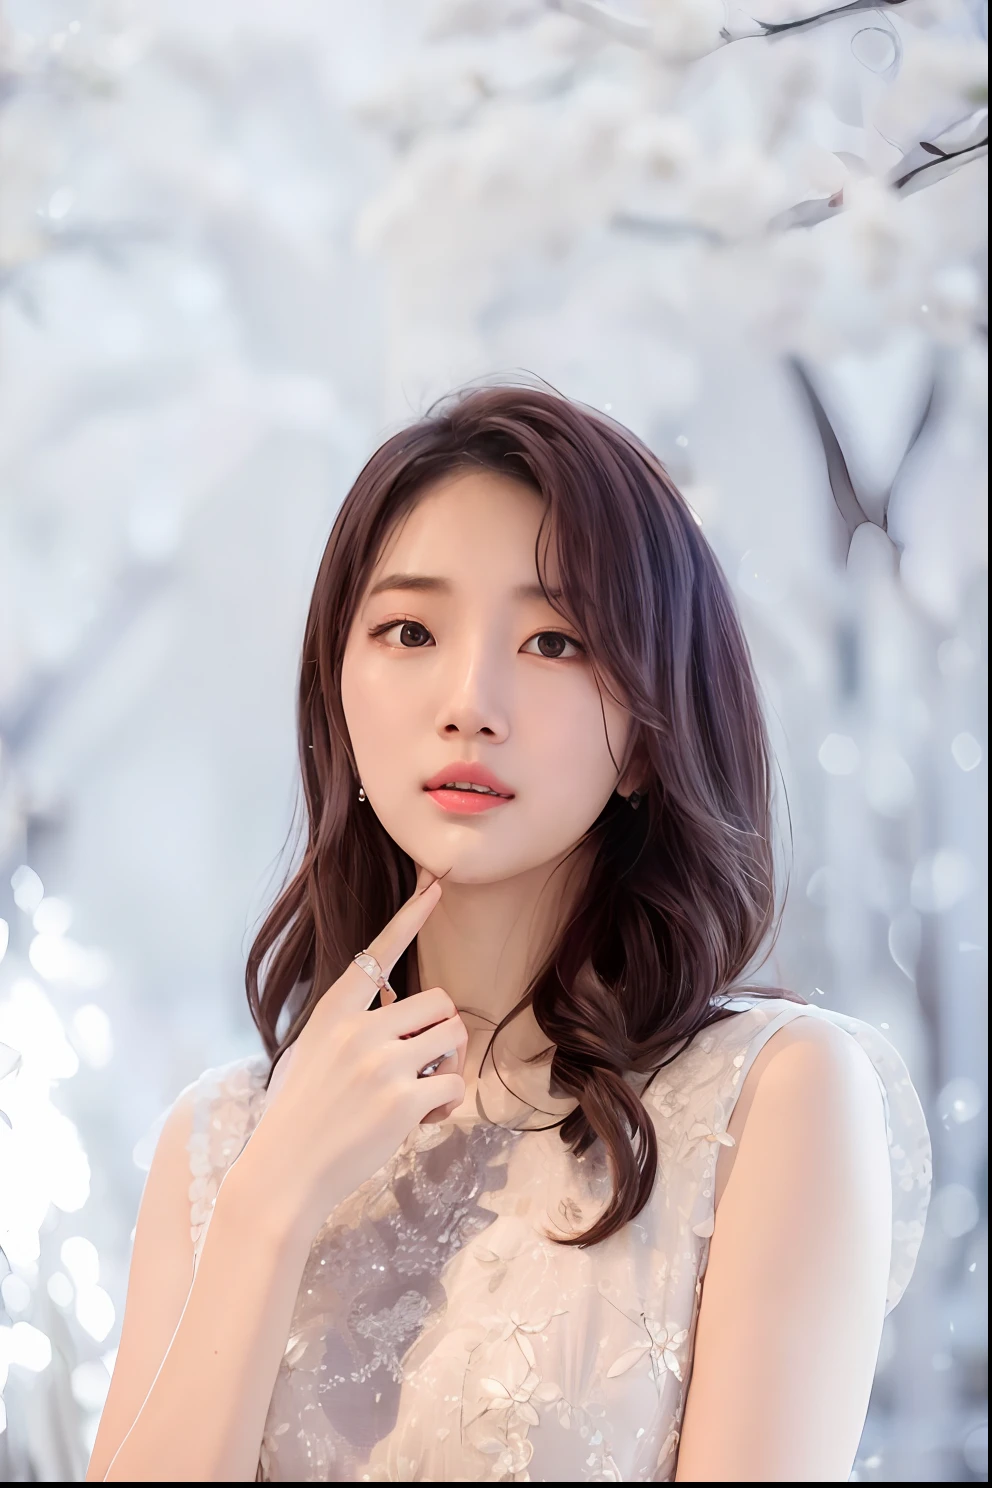 a woman in a white dress posing for a picture, jaeyeon nam, sha xi, lee ji-eun, lee ji - eun, xintong chen, lu ji, yun ling, ruan jia beautiful!, hwang se - on, jinyoung shin, li zixin, kim hyun joo, jiyun chae, heonhwa choe, park ji-min